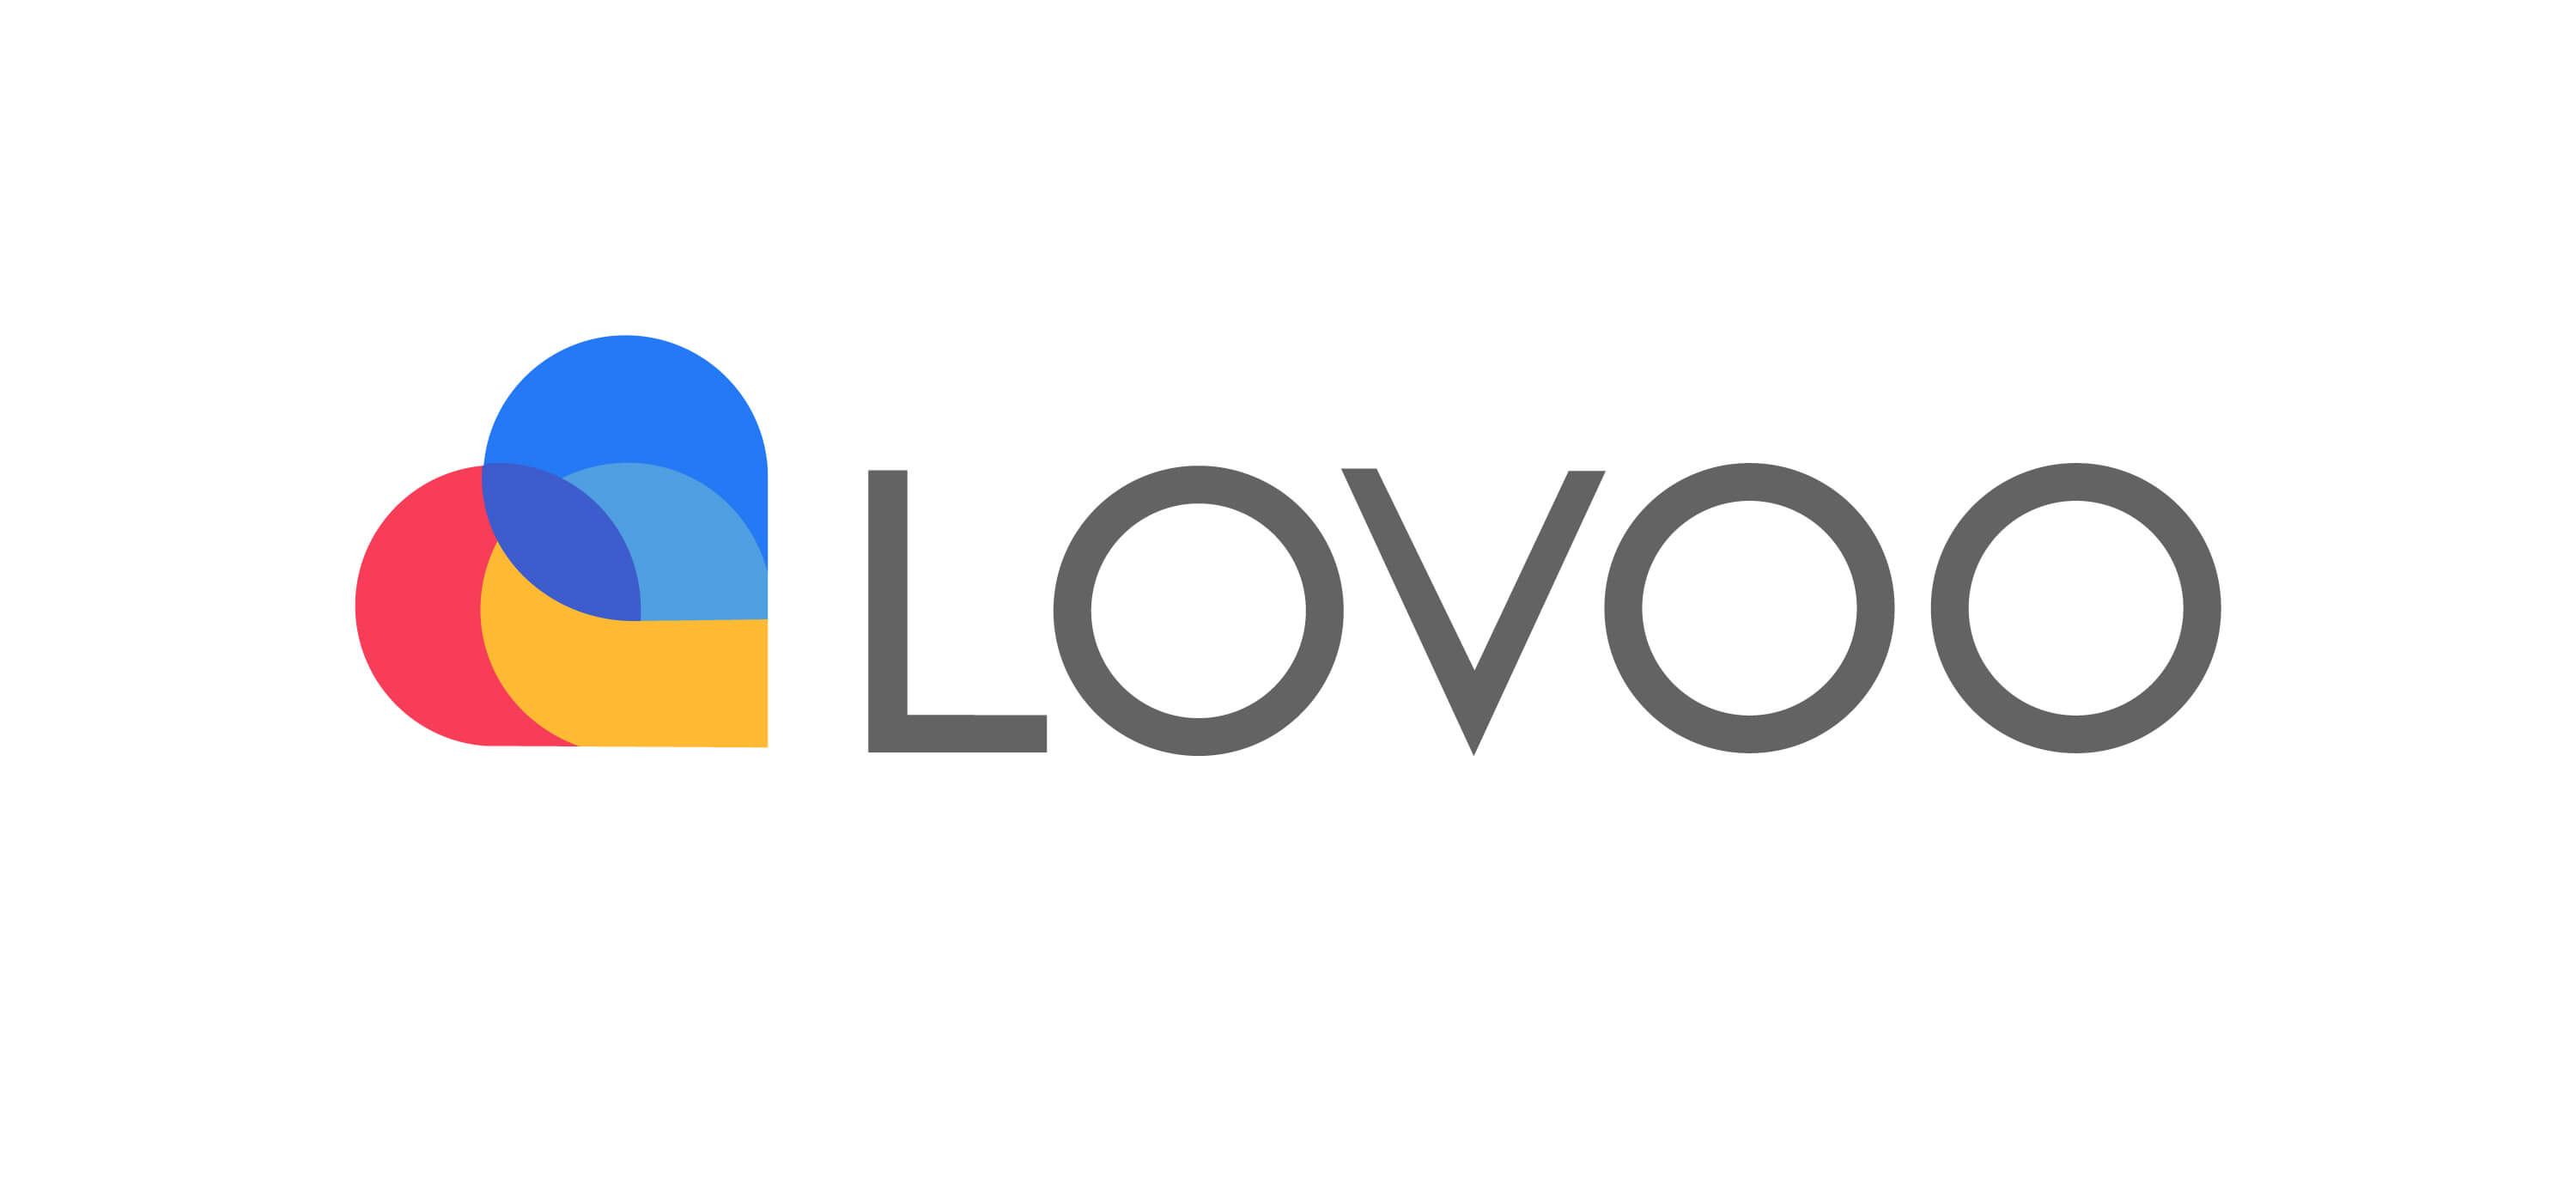 Der ultimative Guide zum Ändern des Standorts auf LOVOO unter iOS & Android